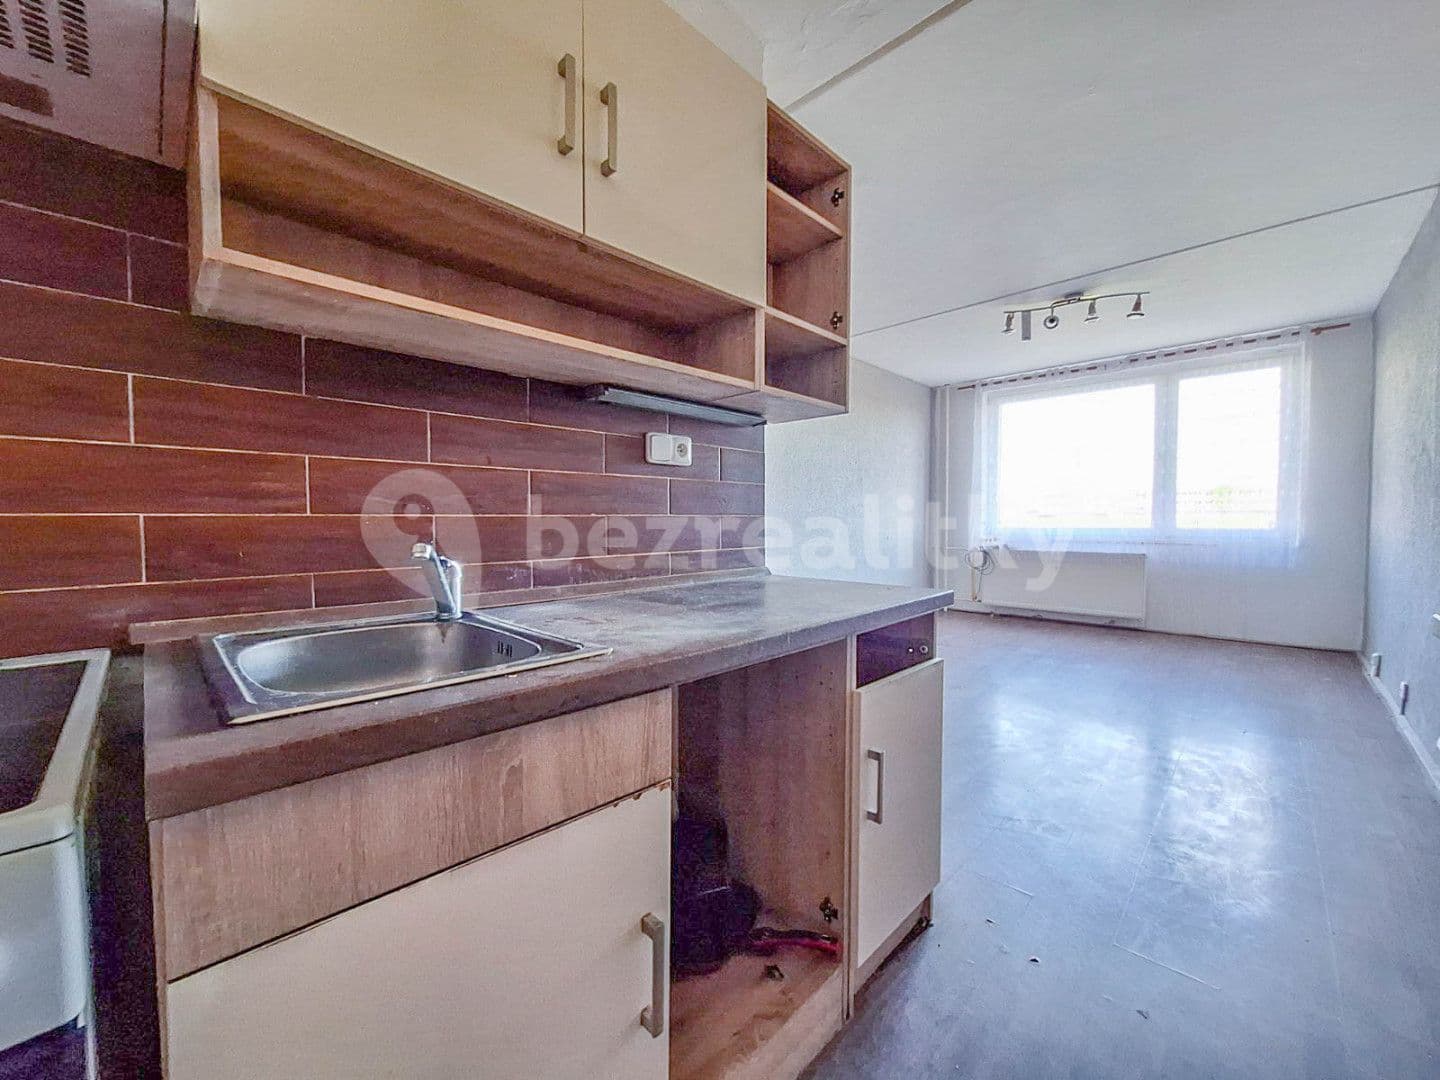 1 bedroom with open-plan kitchen flat for sale, 44 m², Okružní, Roudnice nad Labem, Ústecký Region